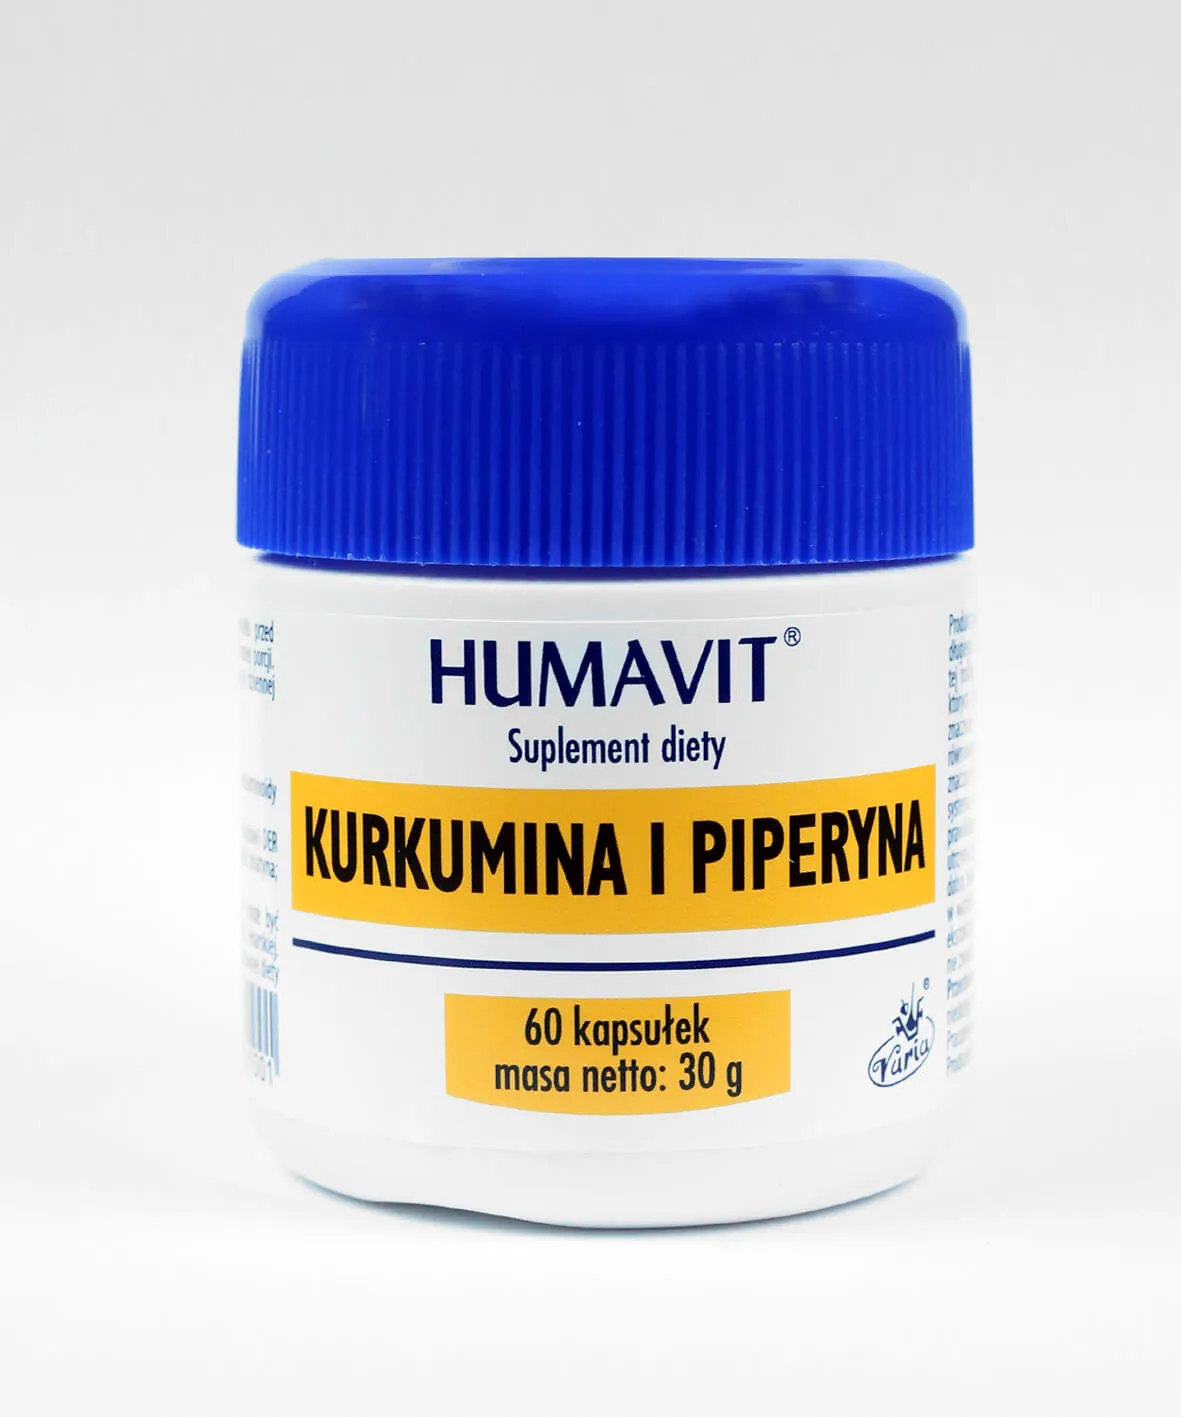 Humavit Kurkumina i Piperyna, suplement diety, 60 kapsułek 